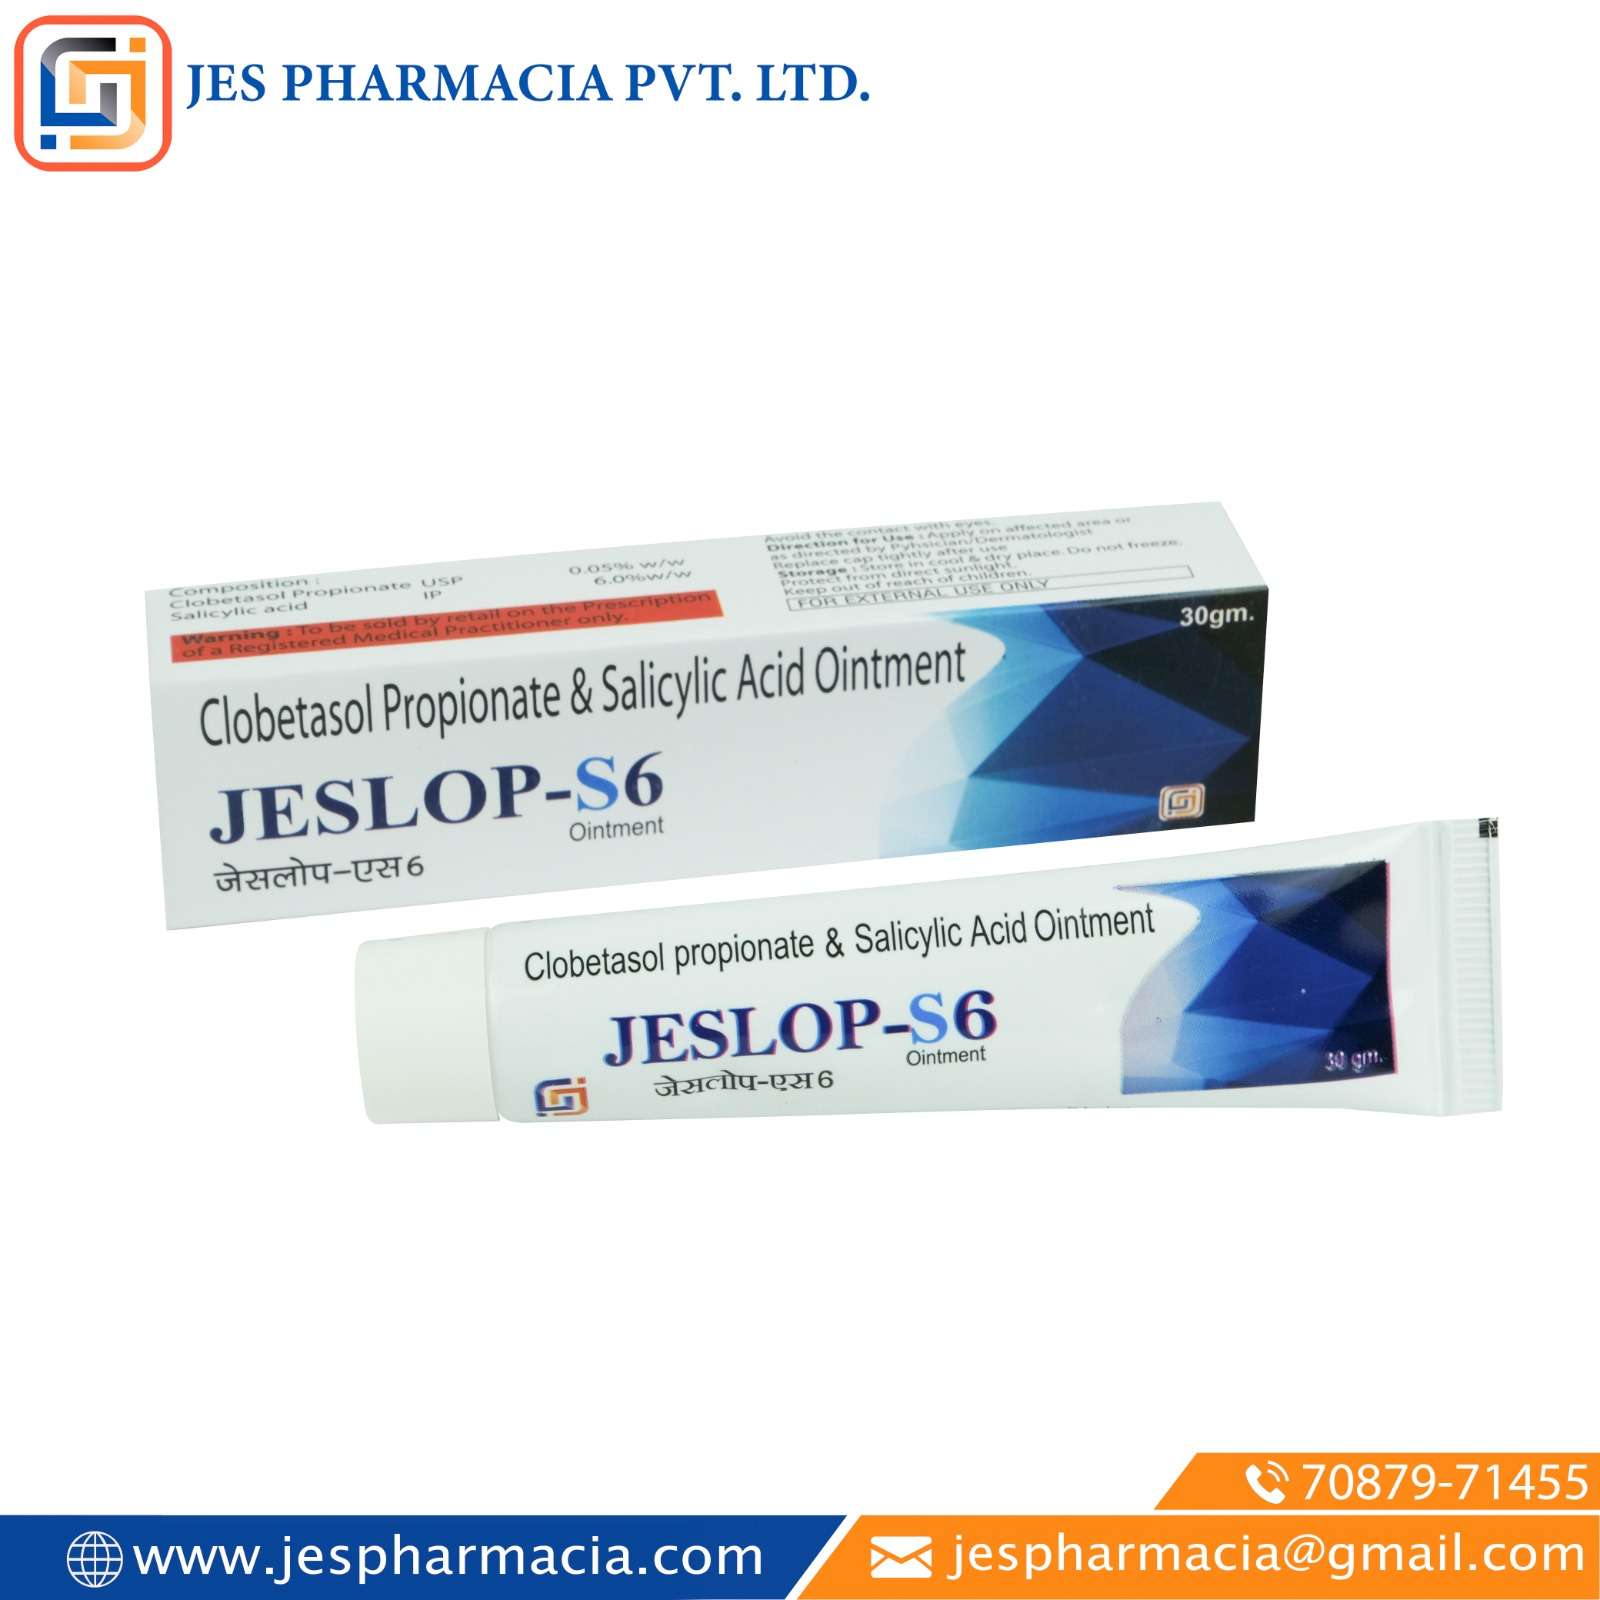 clobetasol propionate usp 0.05 % w/w & salicylic acid 6.0 % w/w ointment